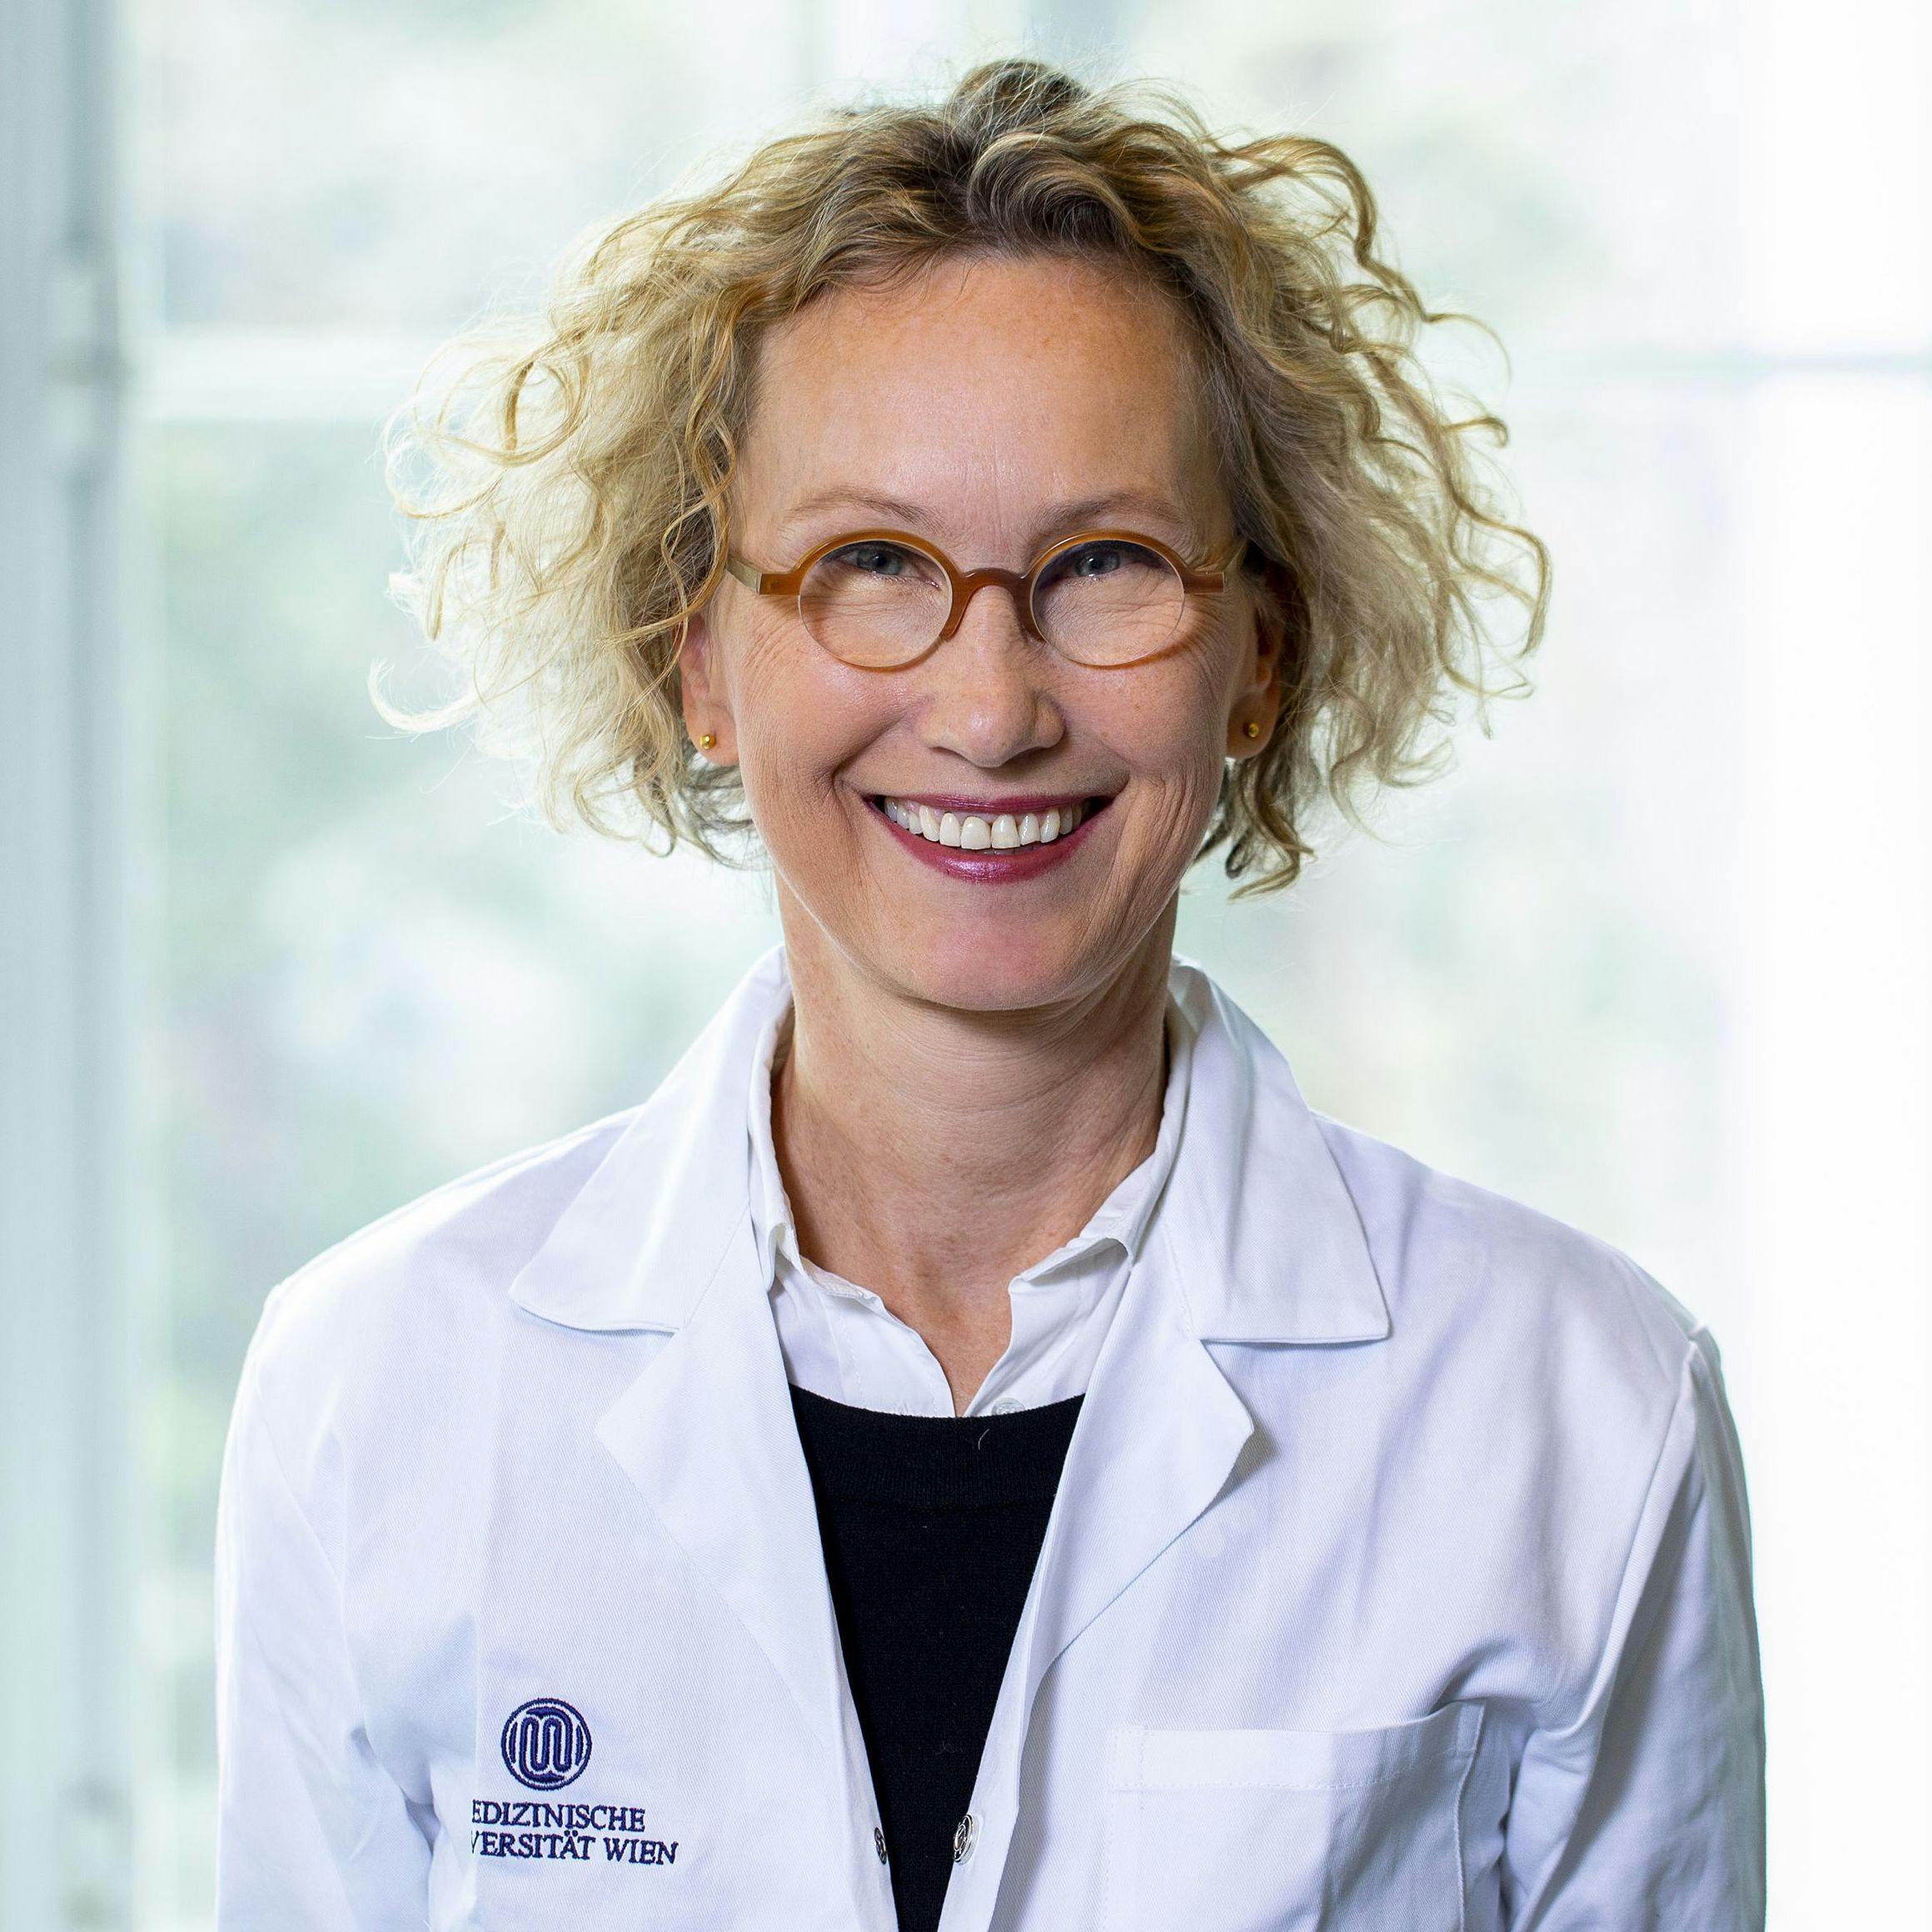 Ursula Schmidt-Erfurth, MD | Image Credit: Medical University of Vienna